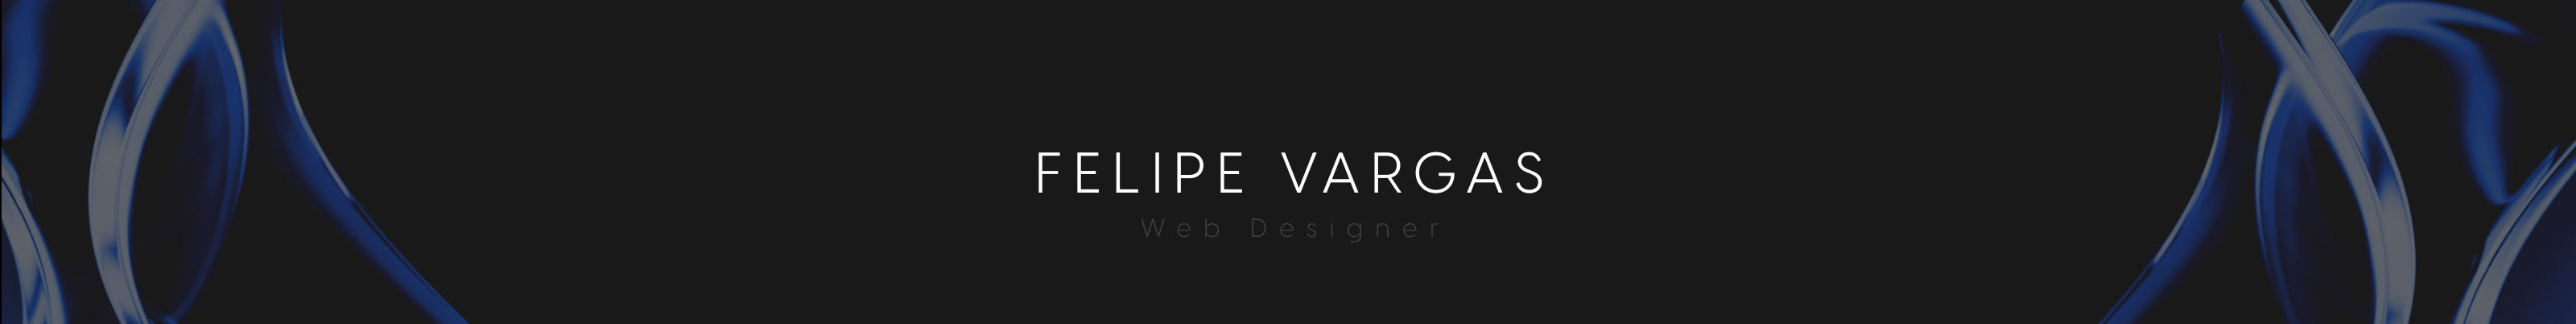 Felipe Vargas's profile banner